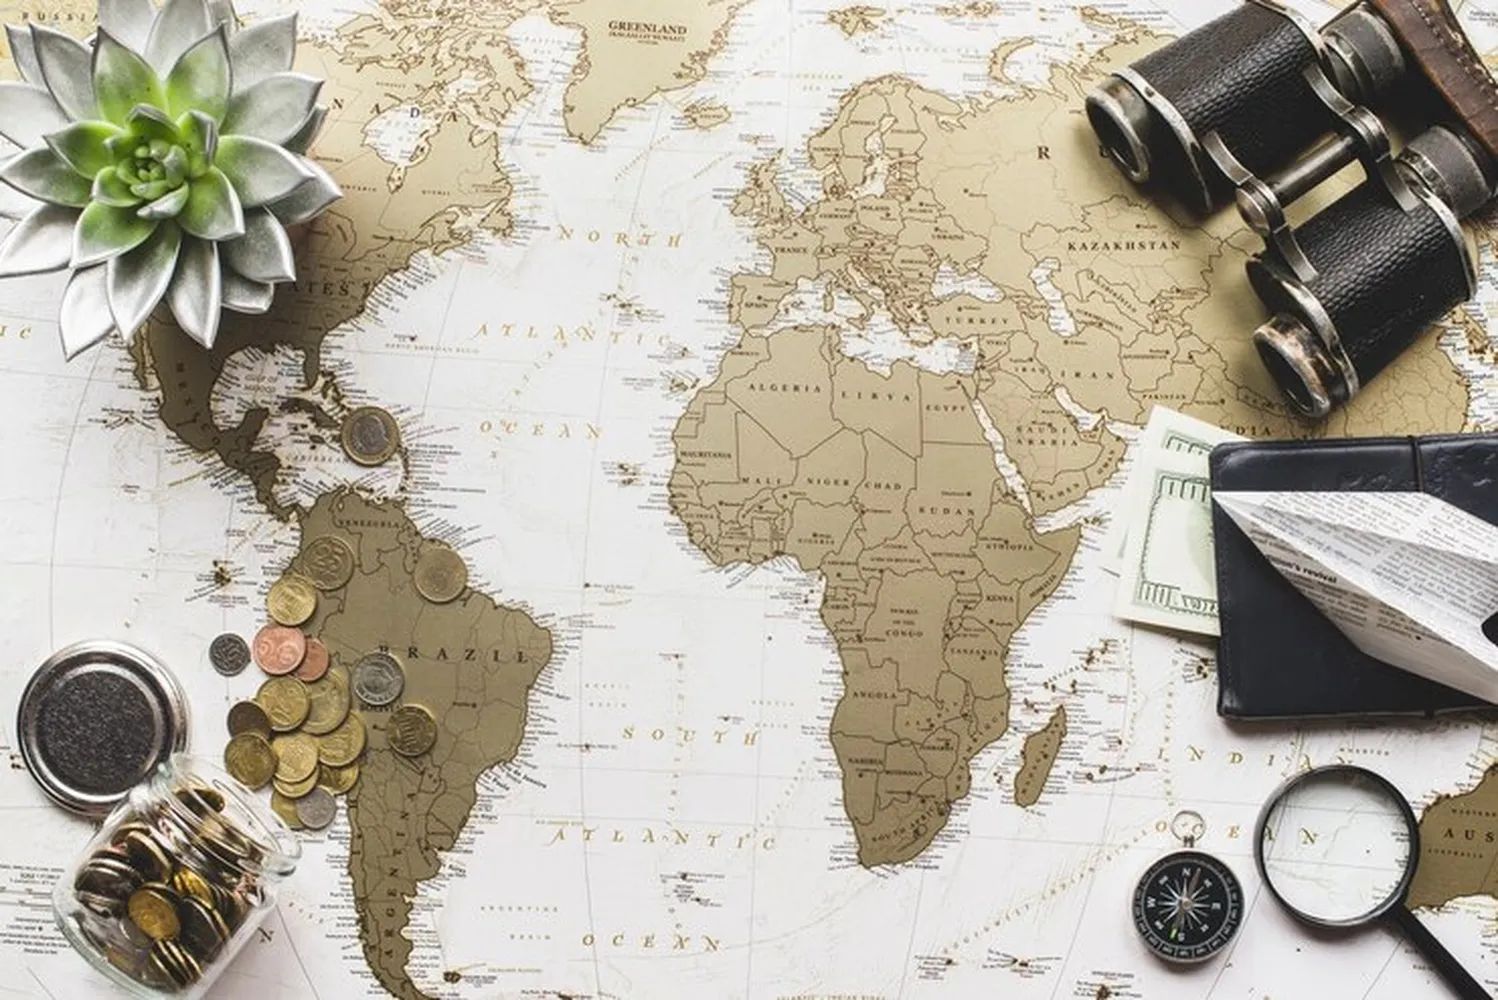 کاغذ دیواری سه بعدی طرح نقشه جهان همراه ابزار سفر